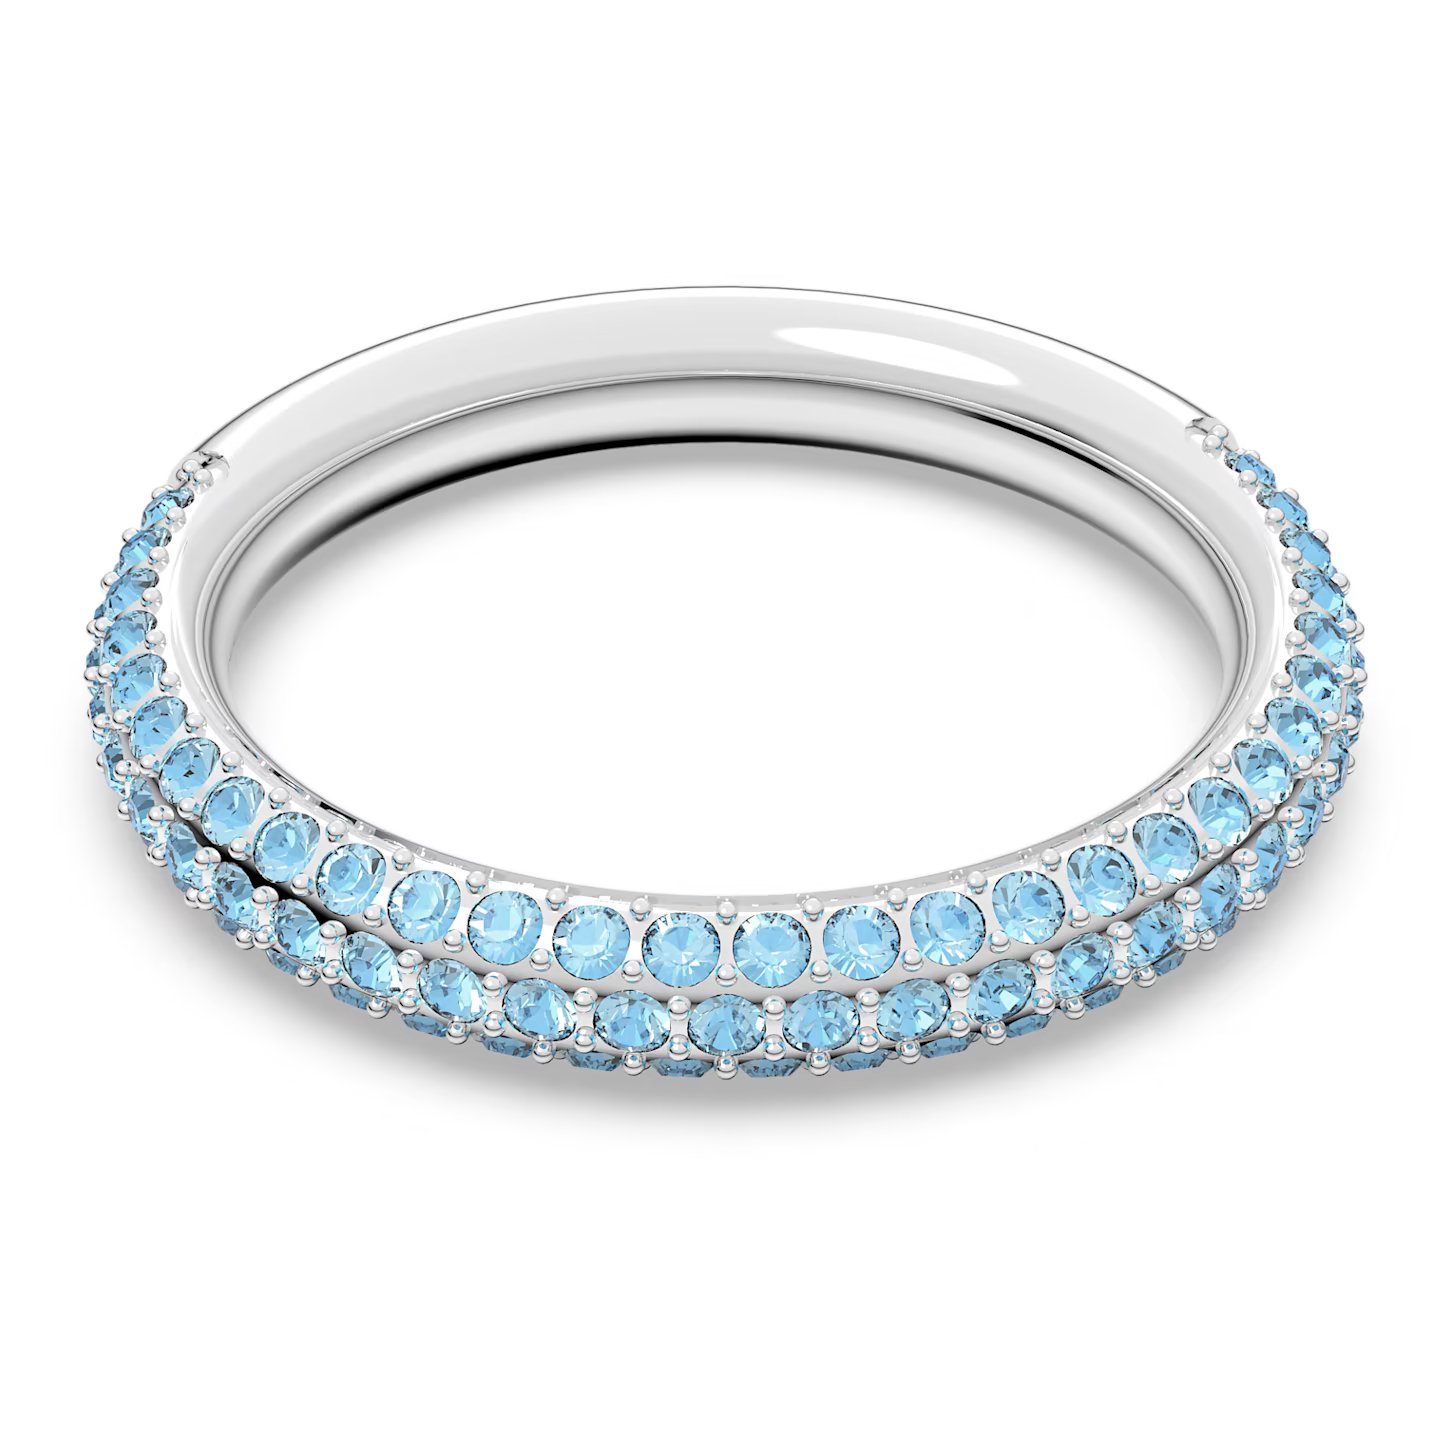 Swarovski Nádherný prsteň s modrými kryštálmi Swarovski Stone 5642903 55 mm